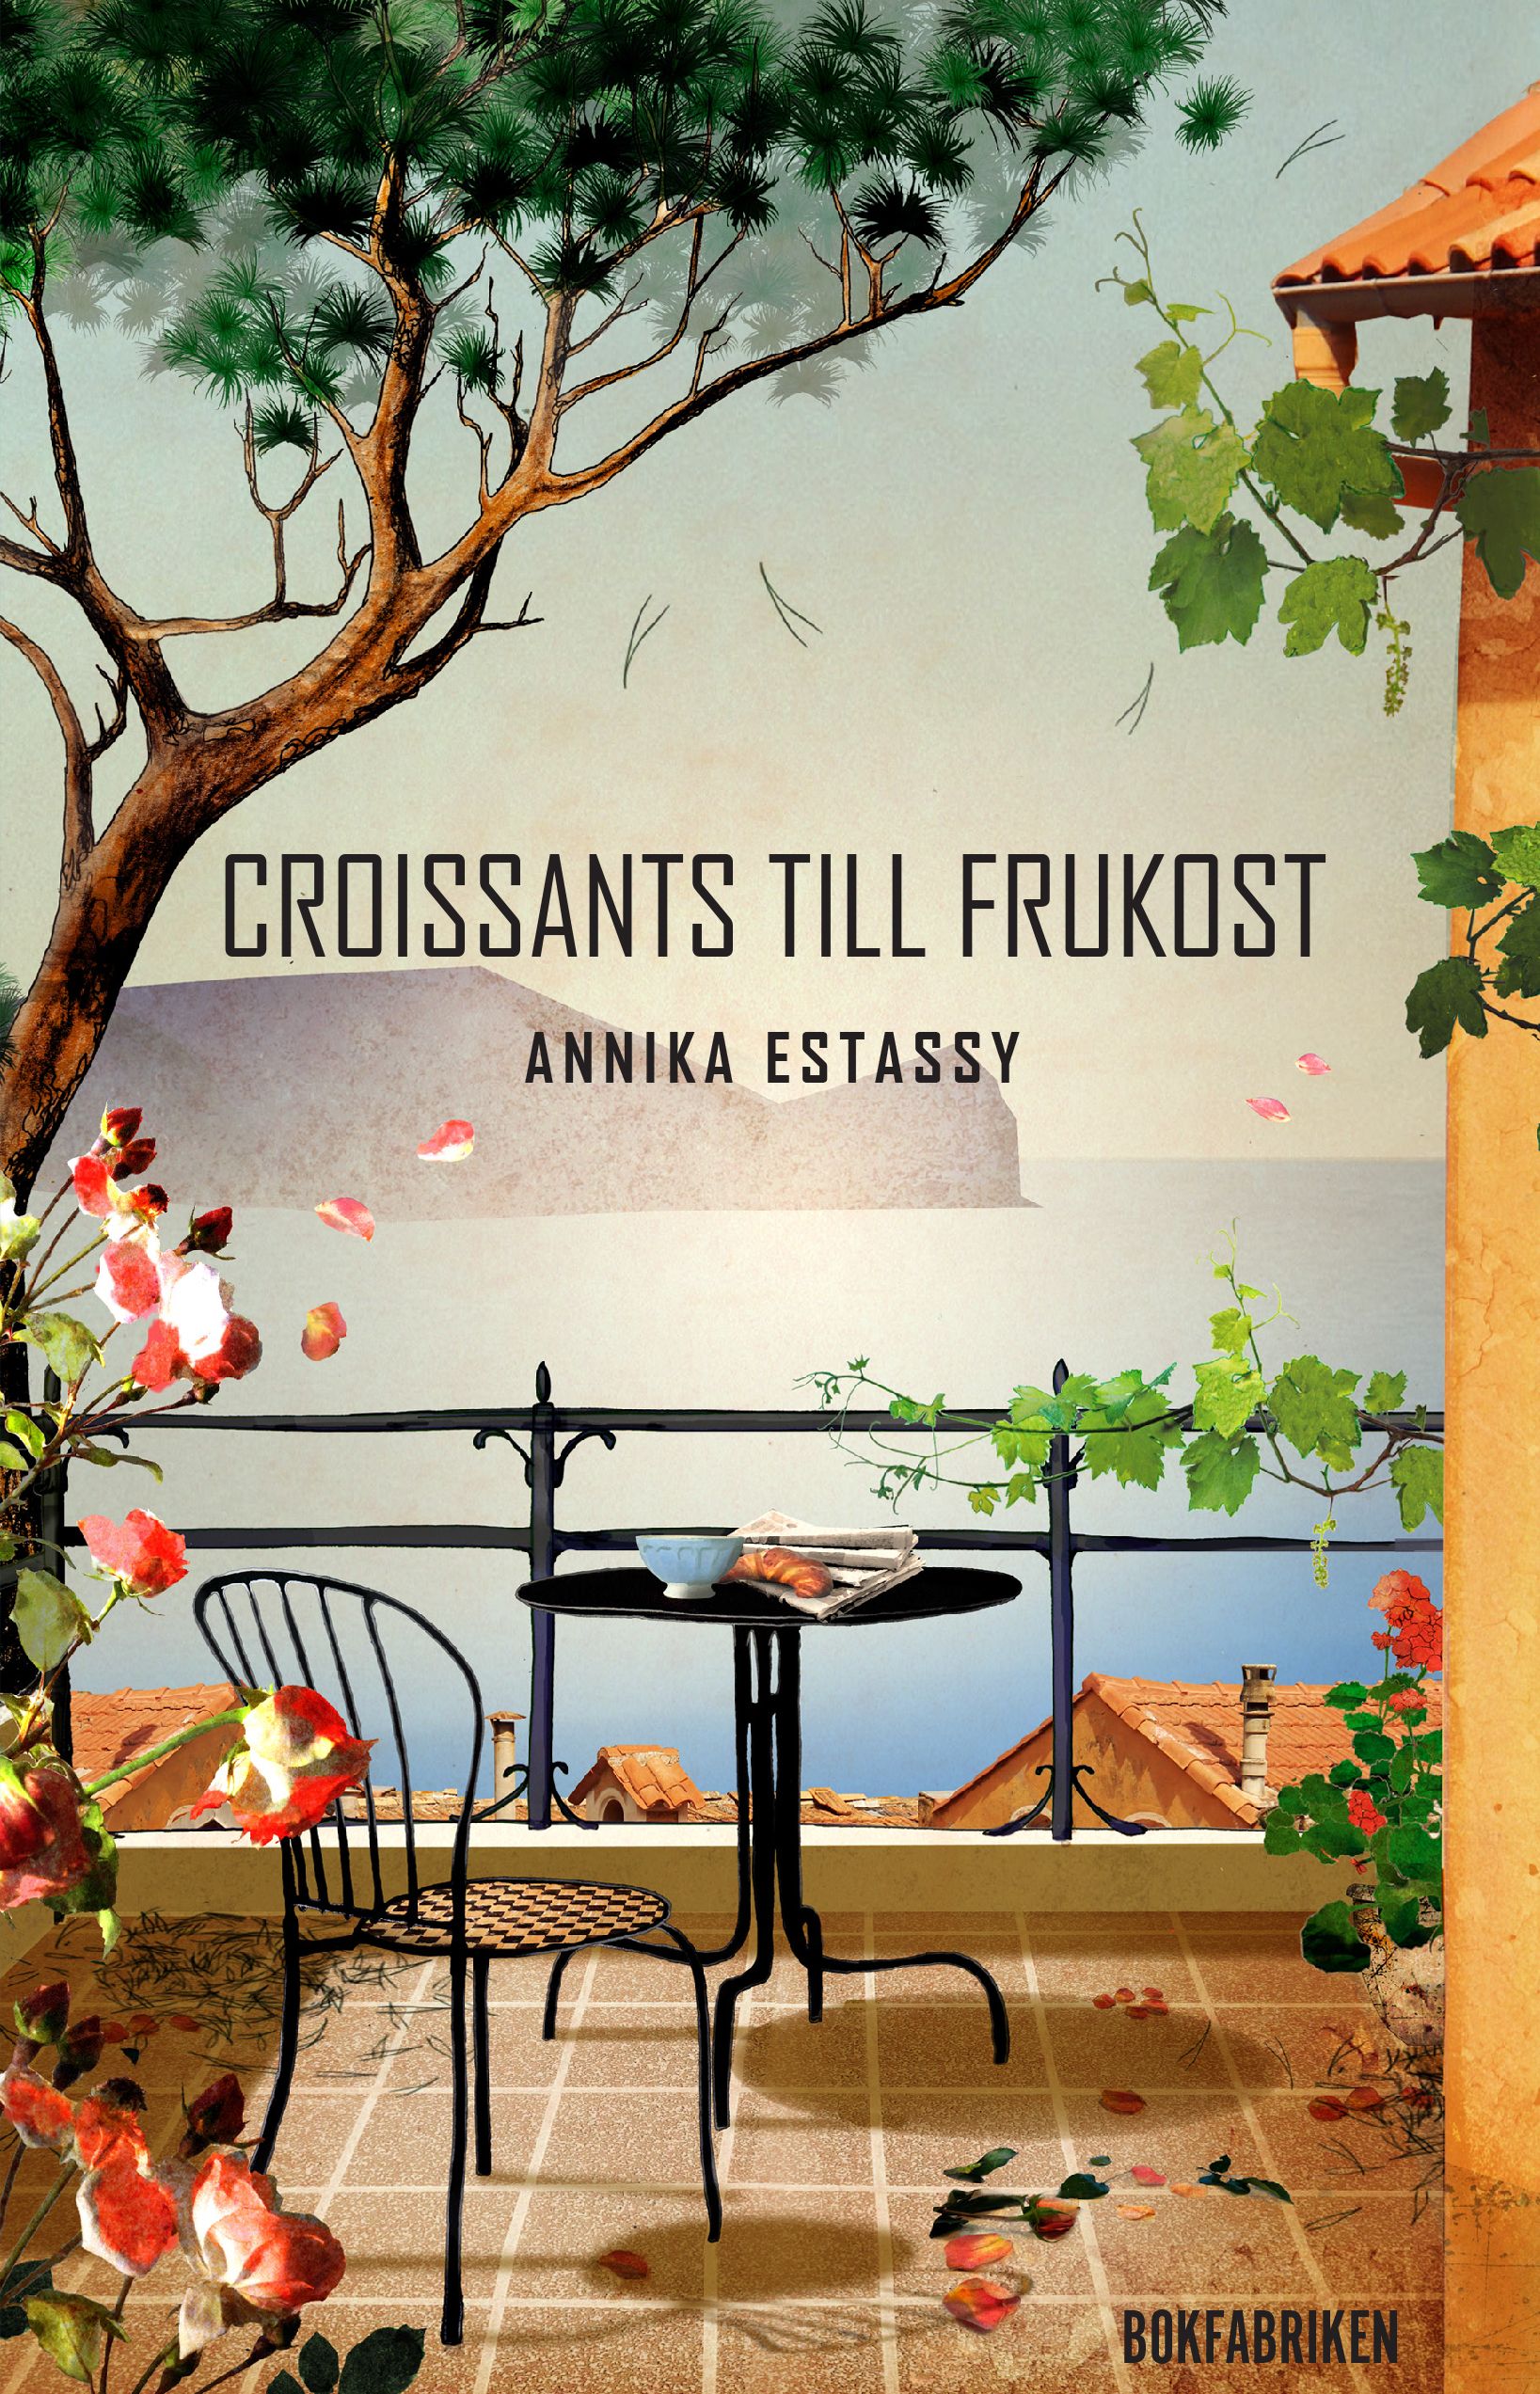 Croissants till frukost, eBook by Annika Estassy